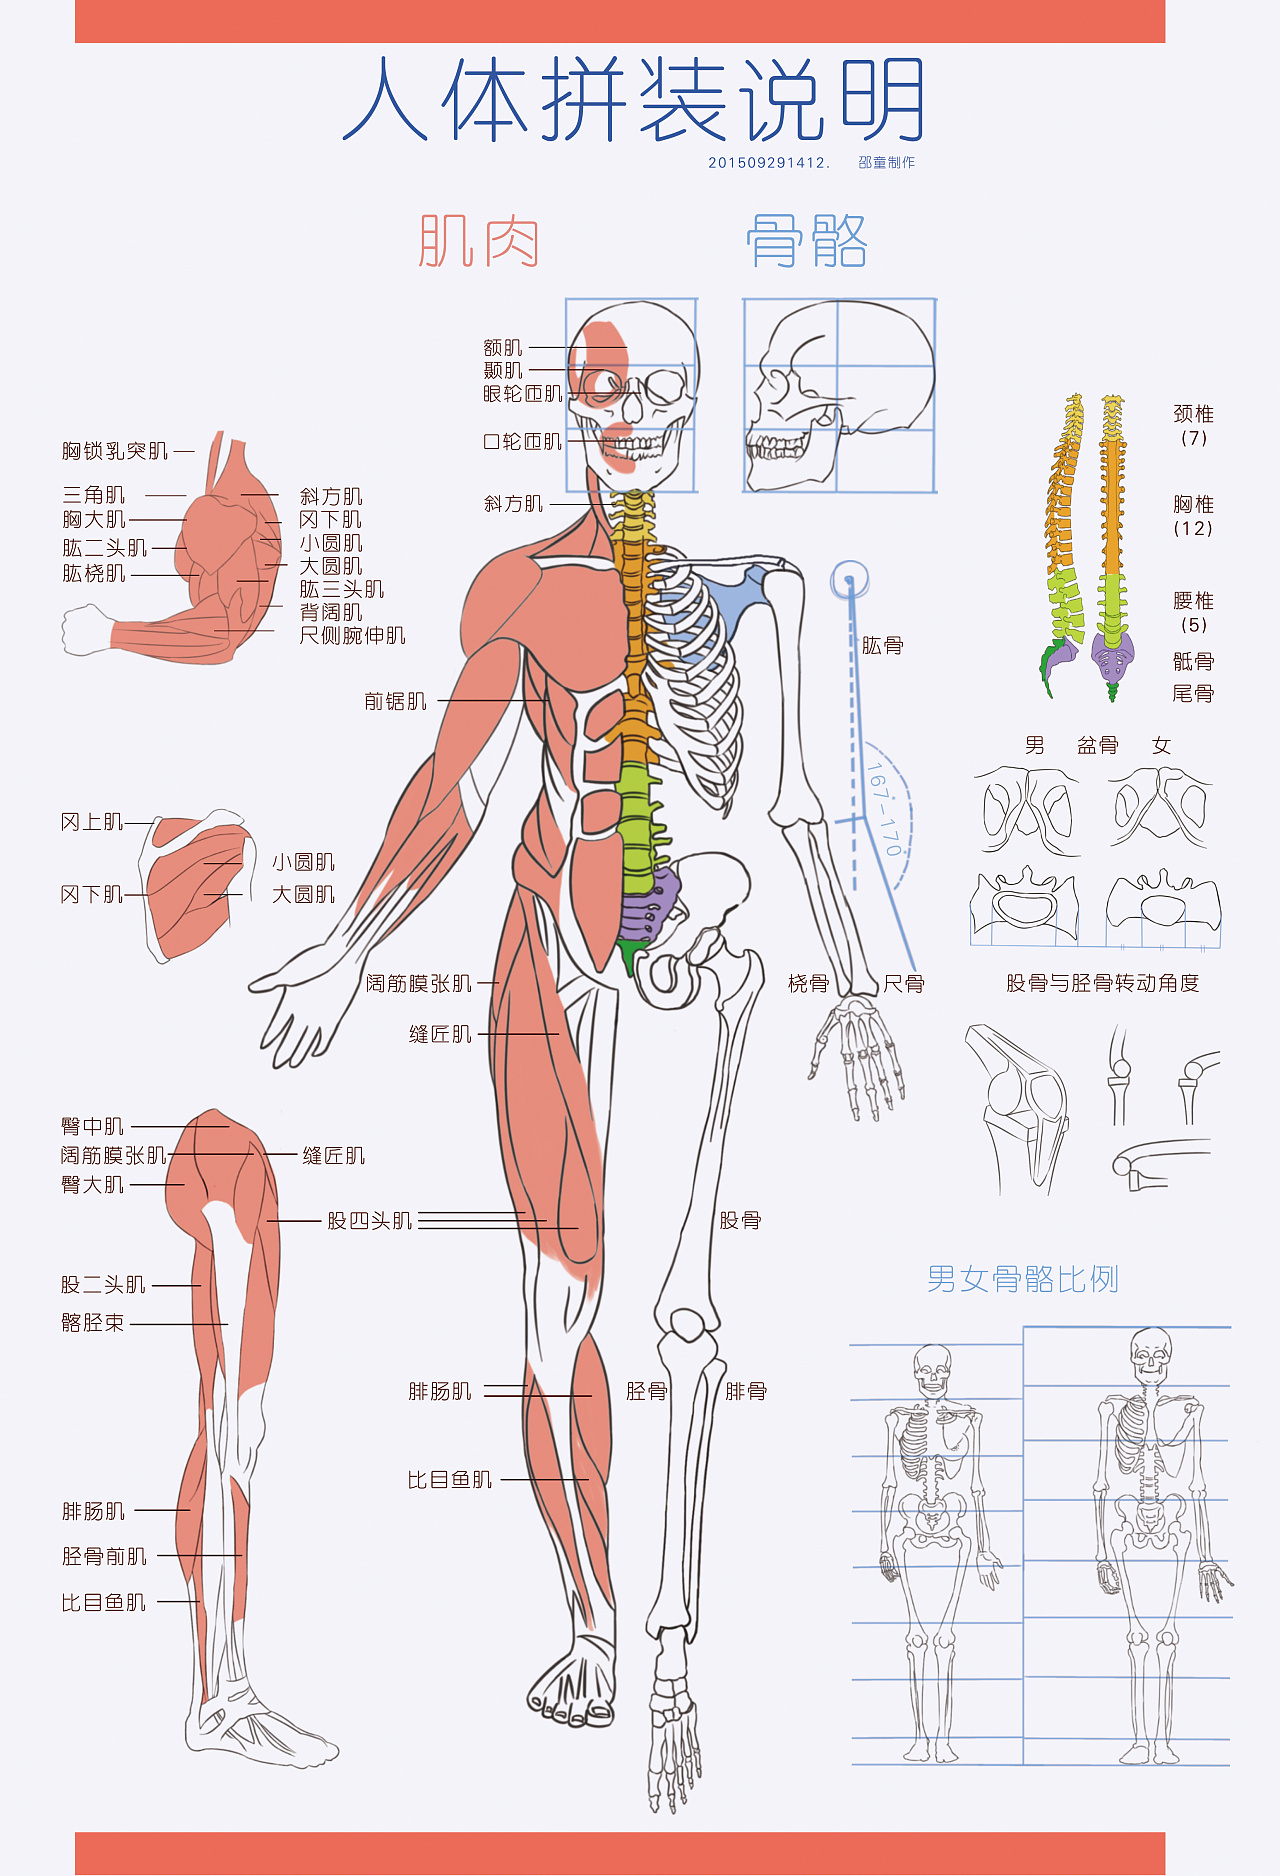 欧美经典“人体解剖图谱”概览 - 知乎